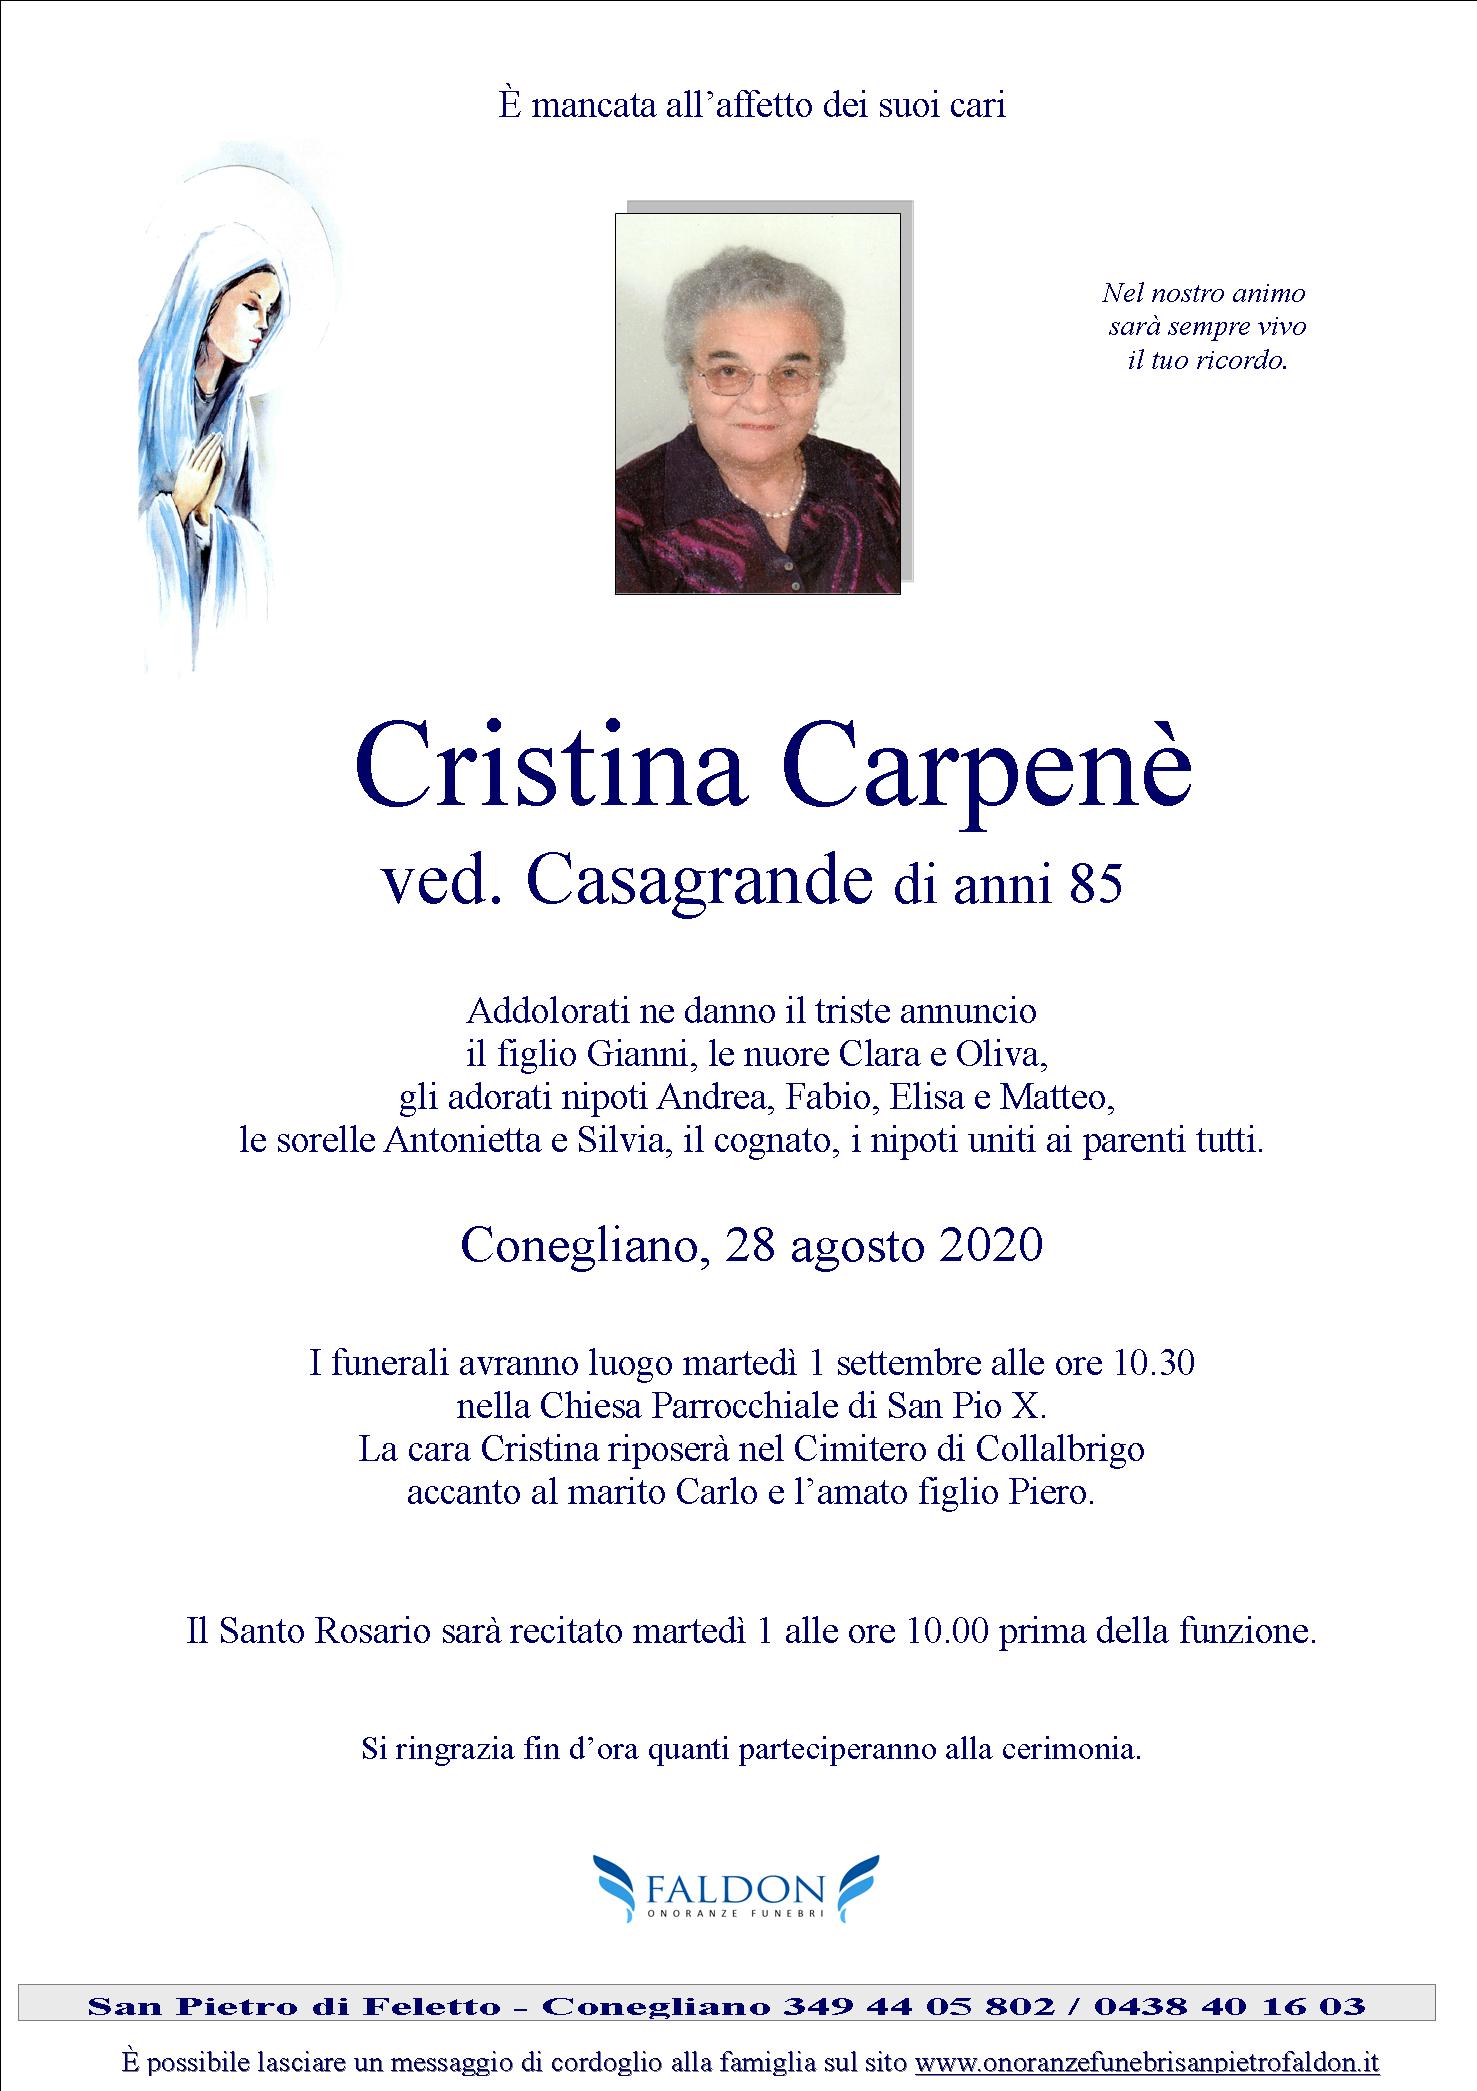 Cristina Carpenè